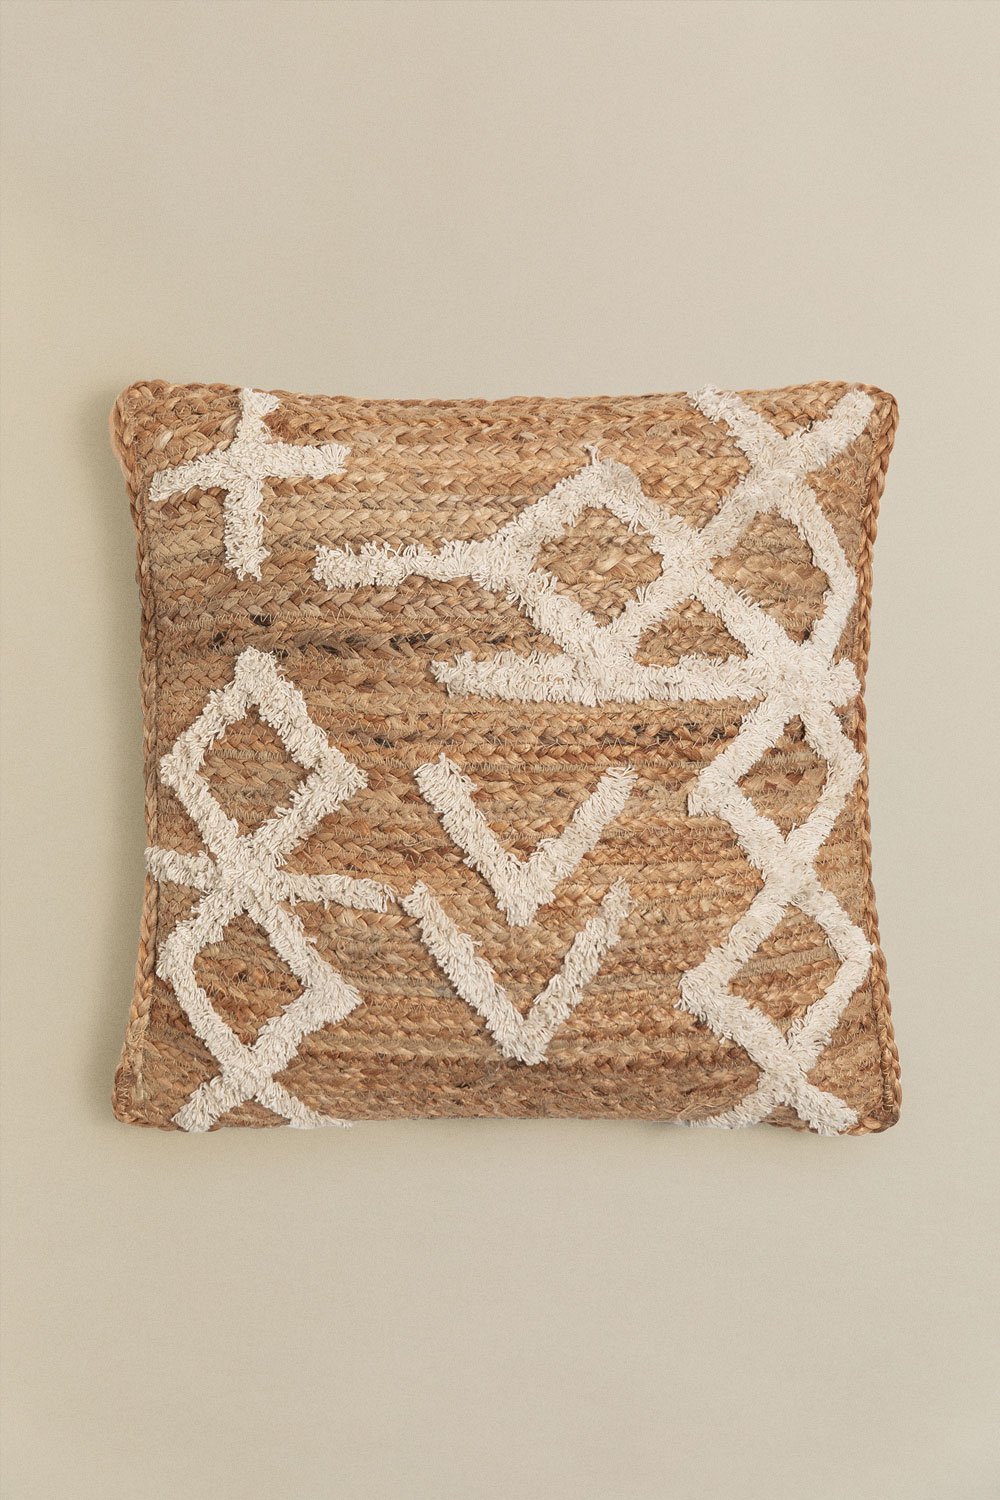 Kwadratowa poduszka z juty i bawełny (45x45 cm) Bato, obrazek w galerii 1